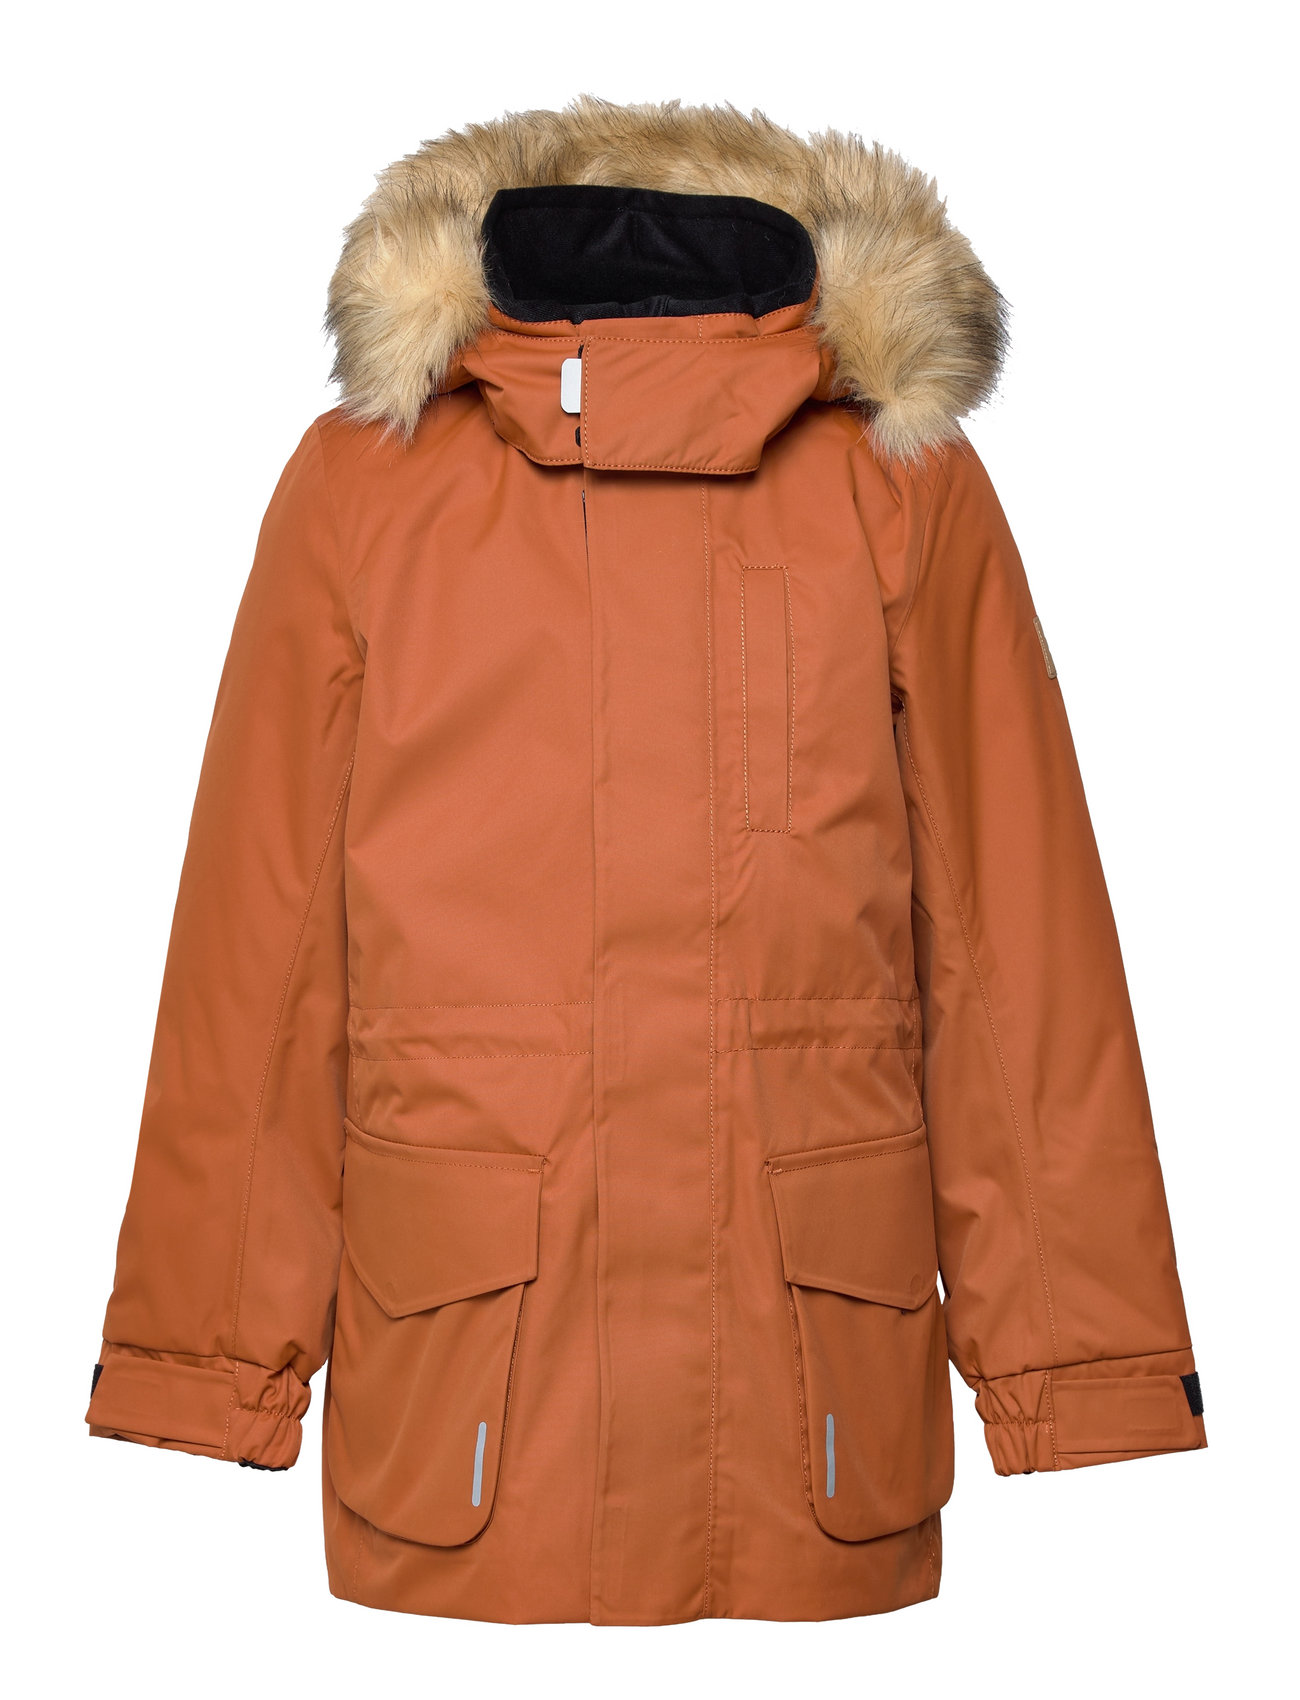 Reima Reimatec Winter Jacket, Naapuri - 135.96 €. Achetez des Parkas Reima  en ligne sur Boozt.com. Livraison rapide et retours faciles